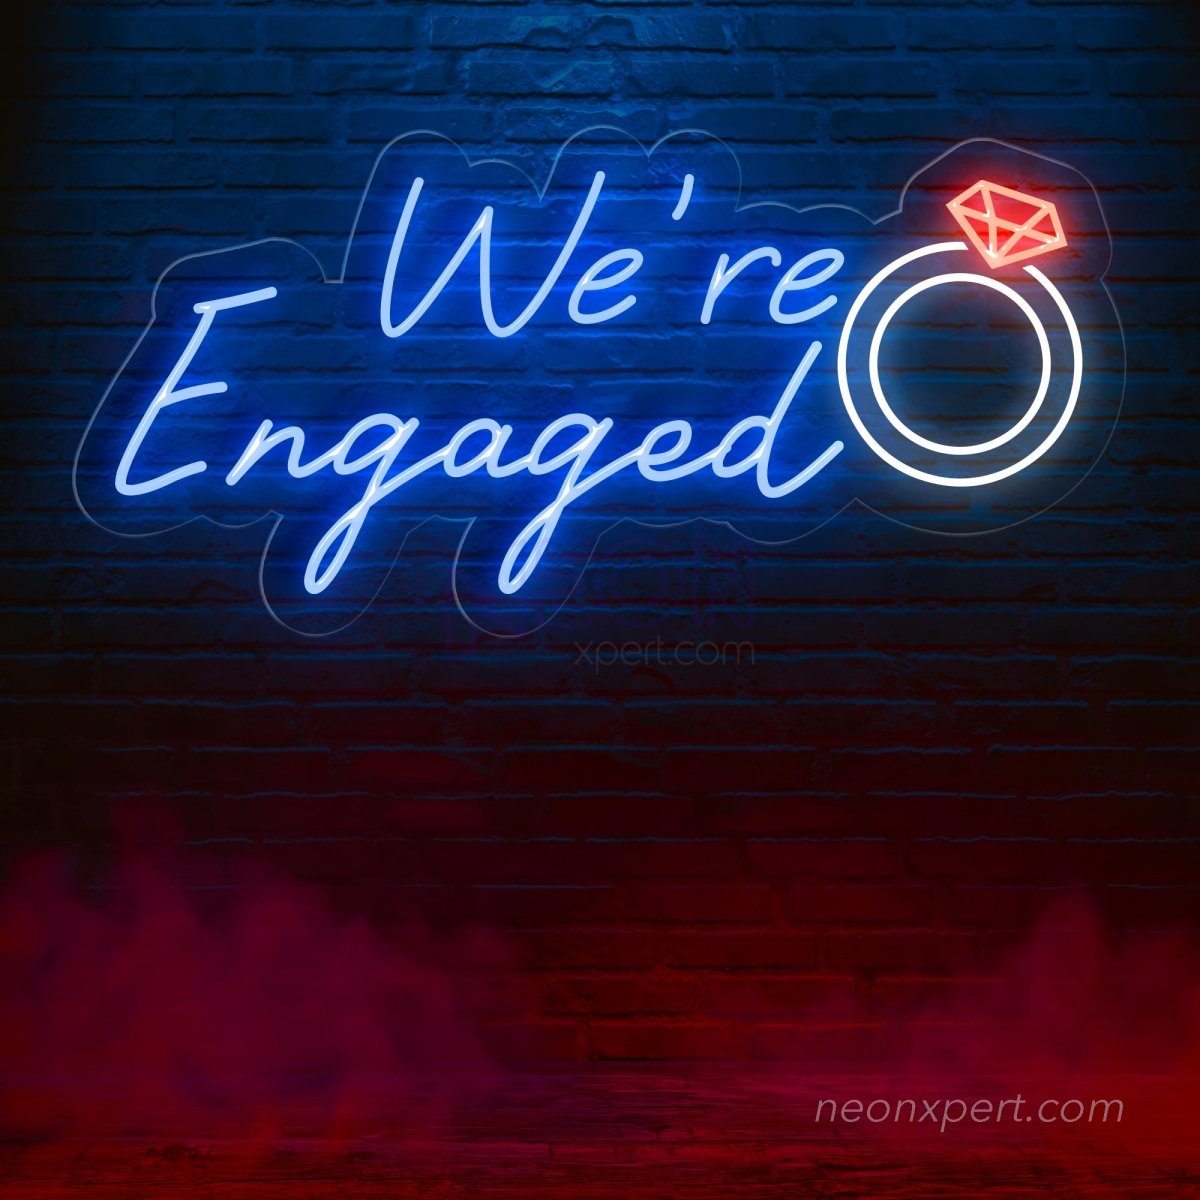 We're Engaged LED Neon Sign Large - Romantic Engagement Celebration Decor - NeonXpert